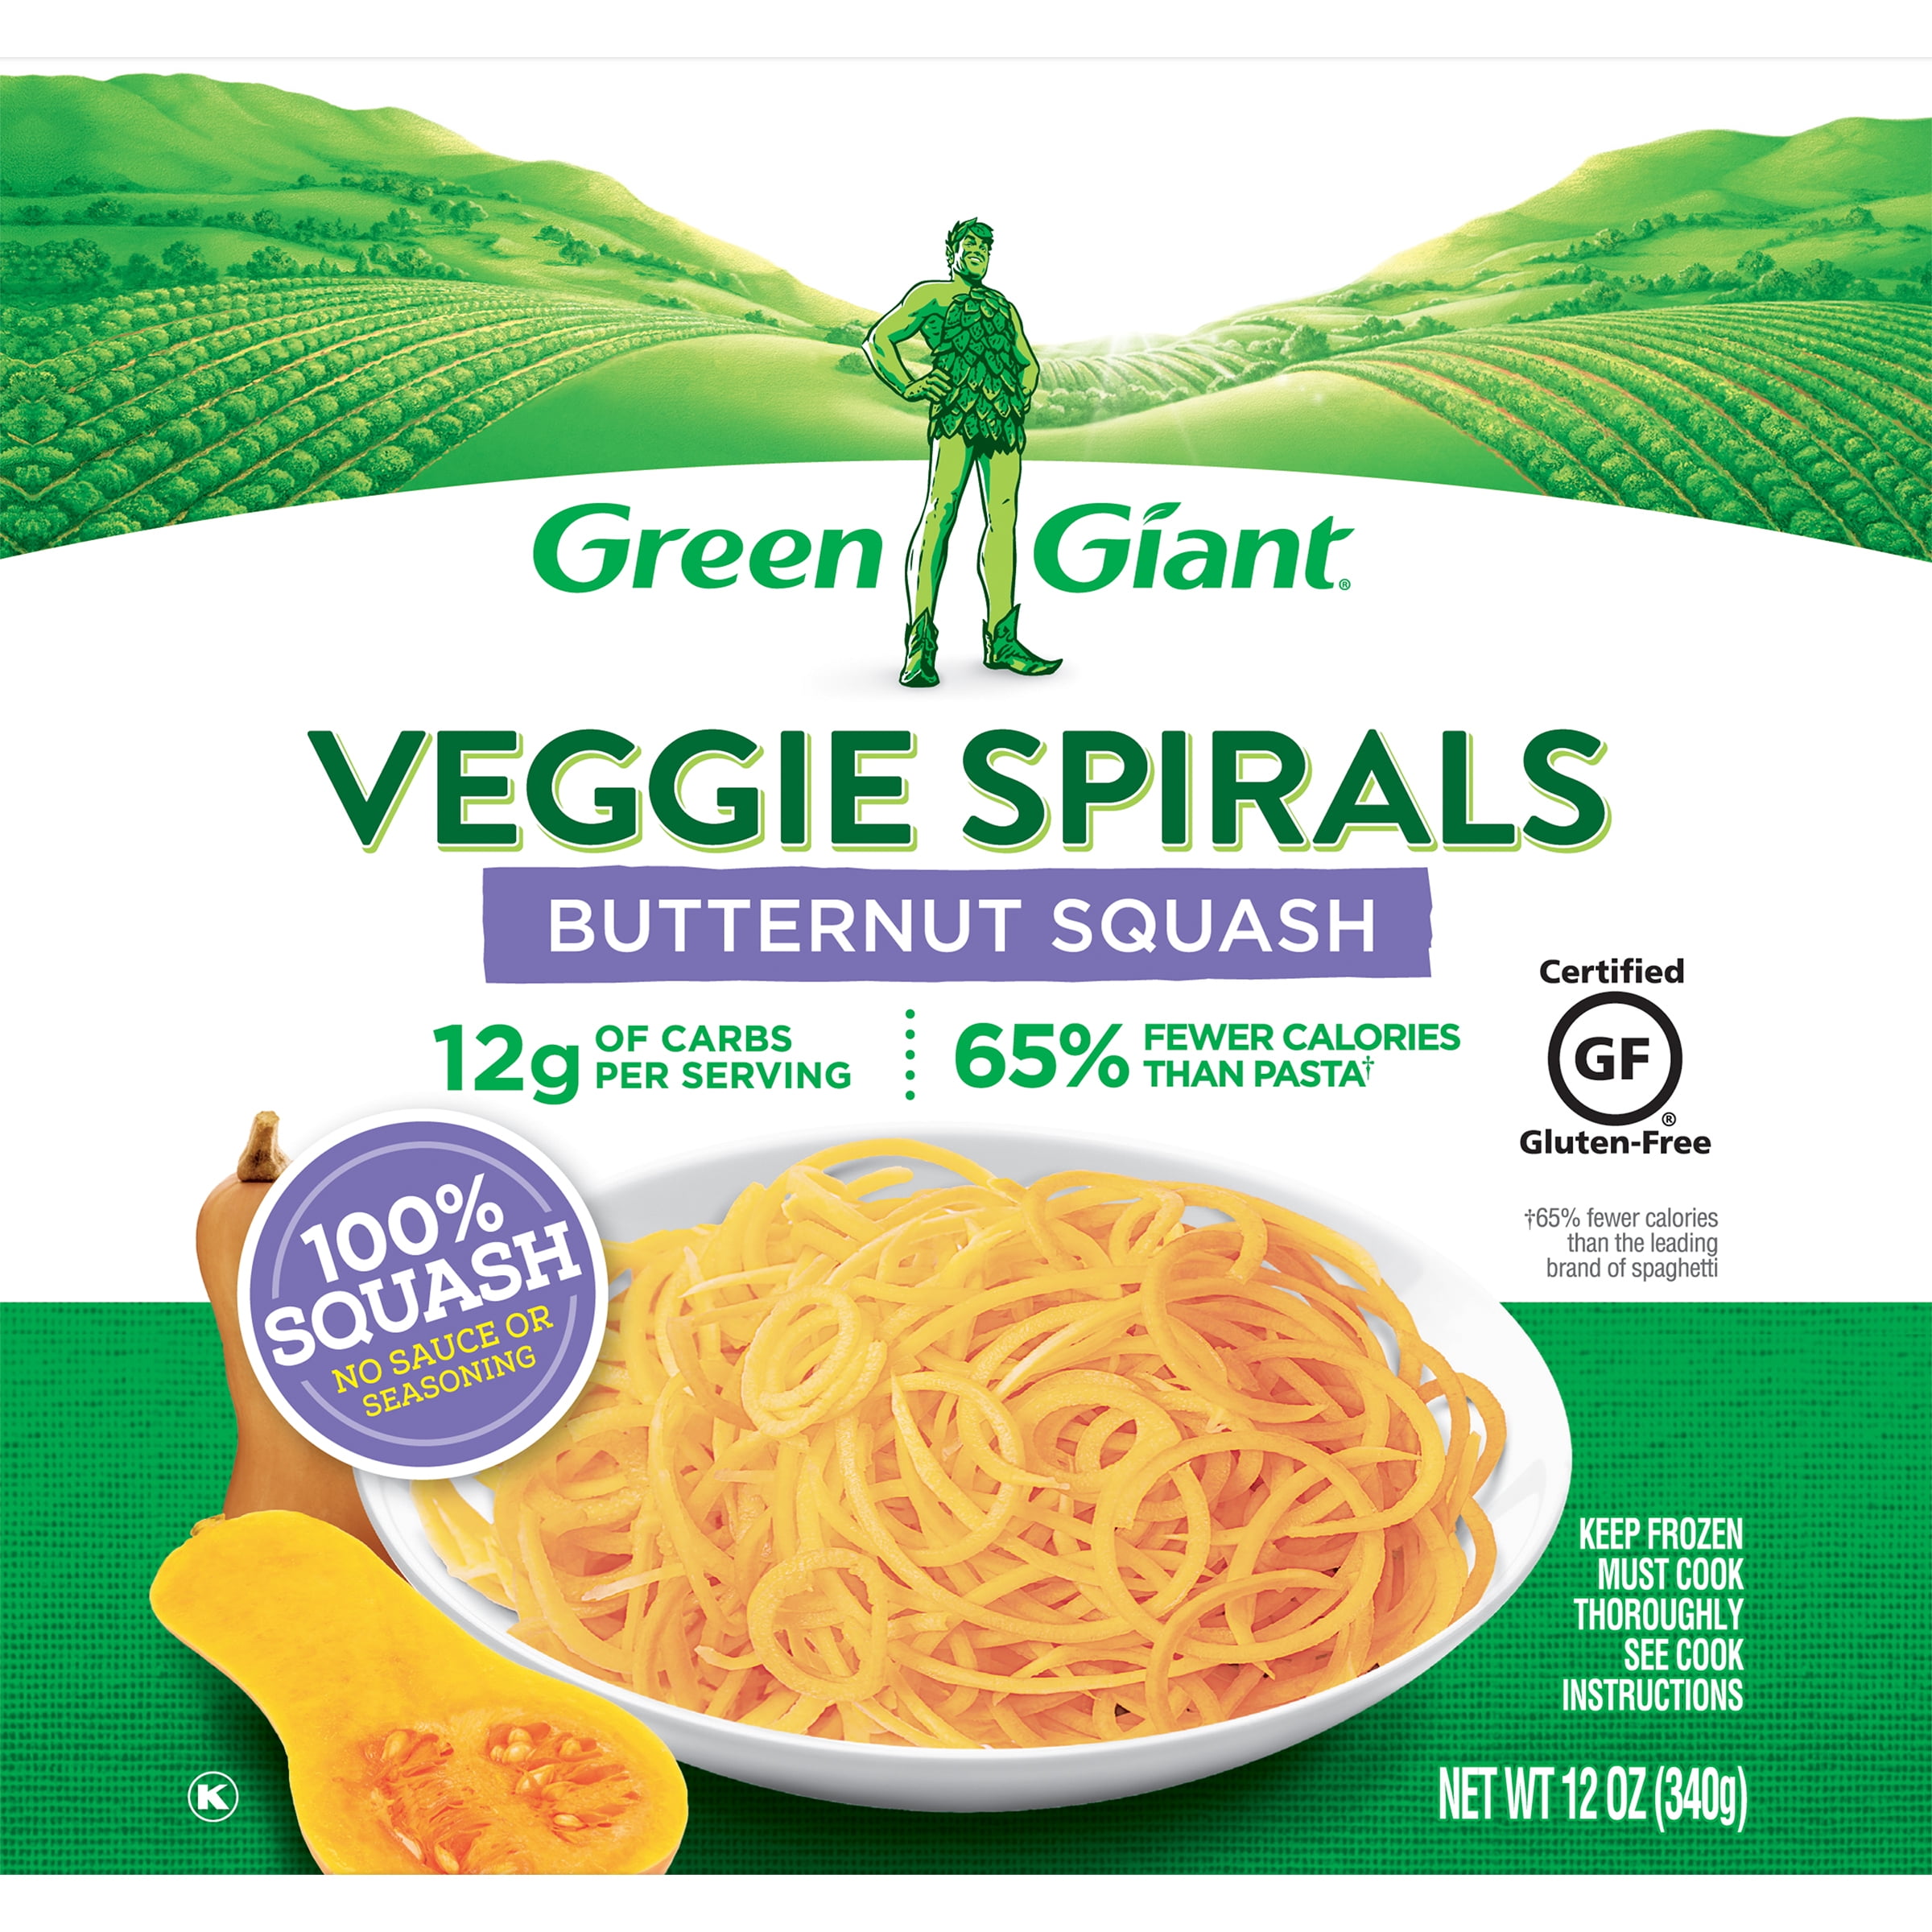 Green Giant Veggie Spirals Butternut Squash, Frozen, 12 oz